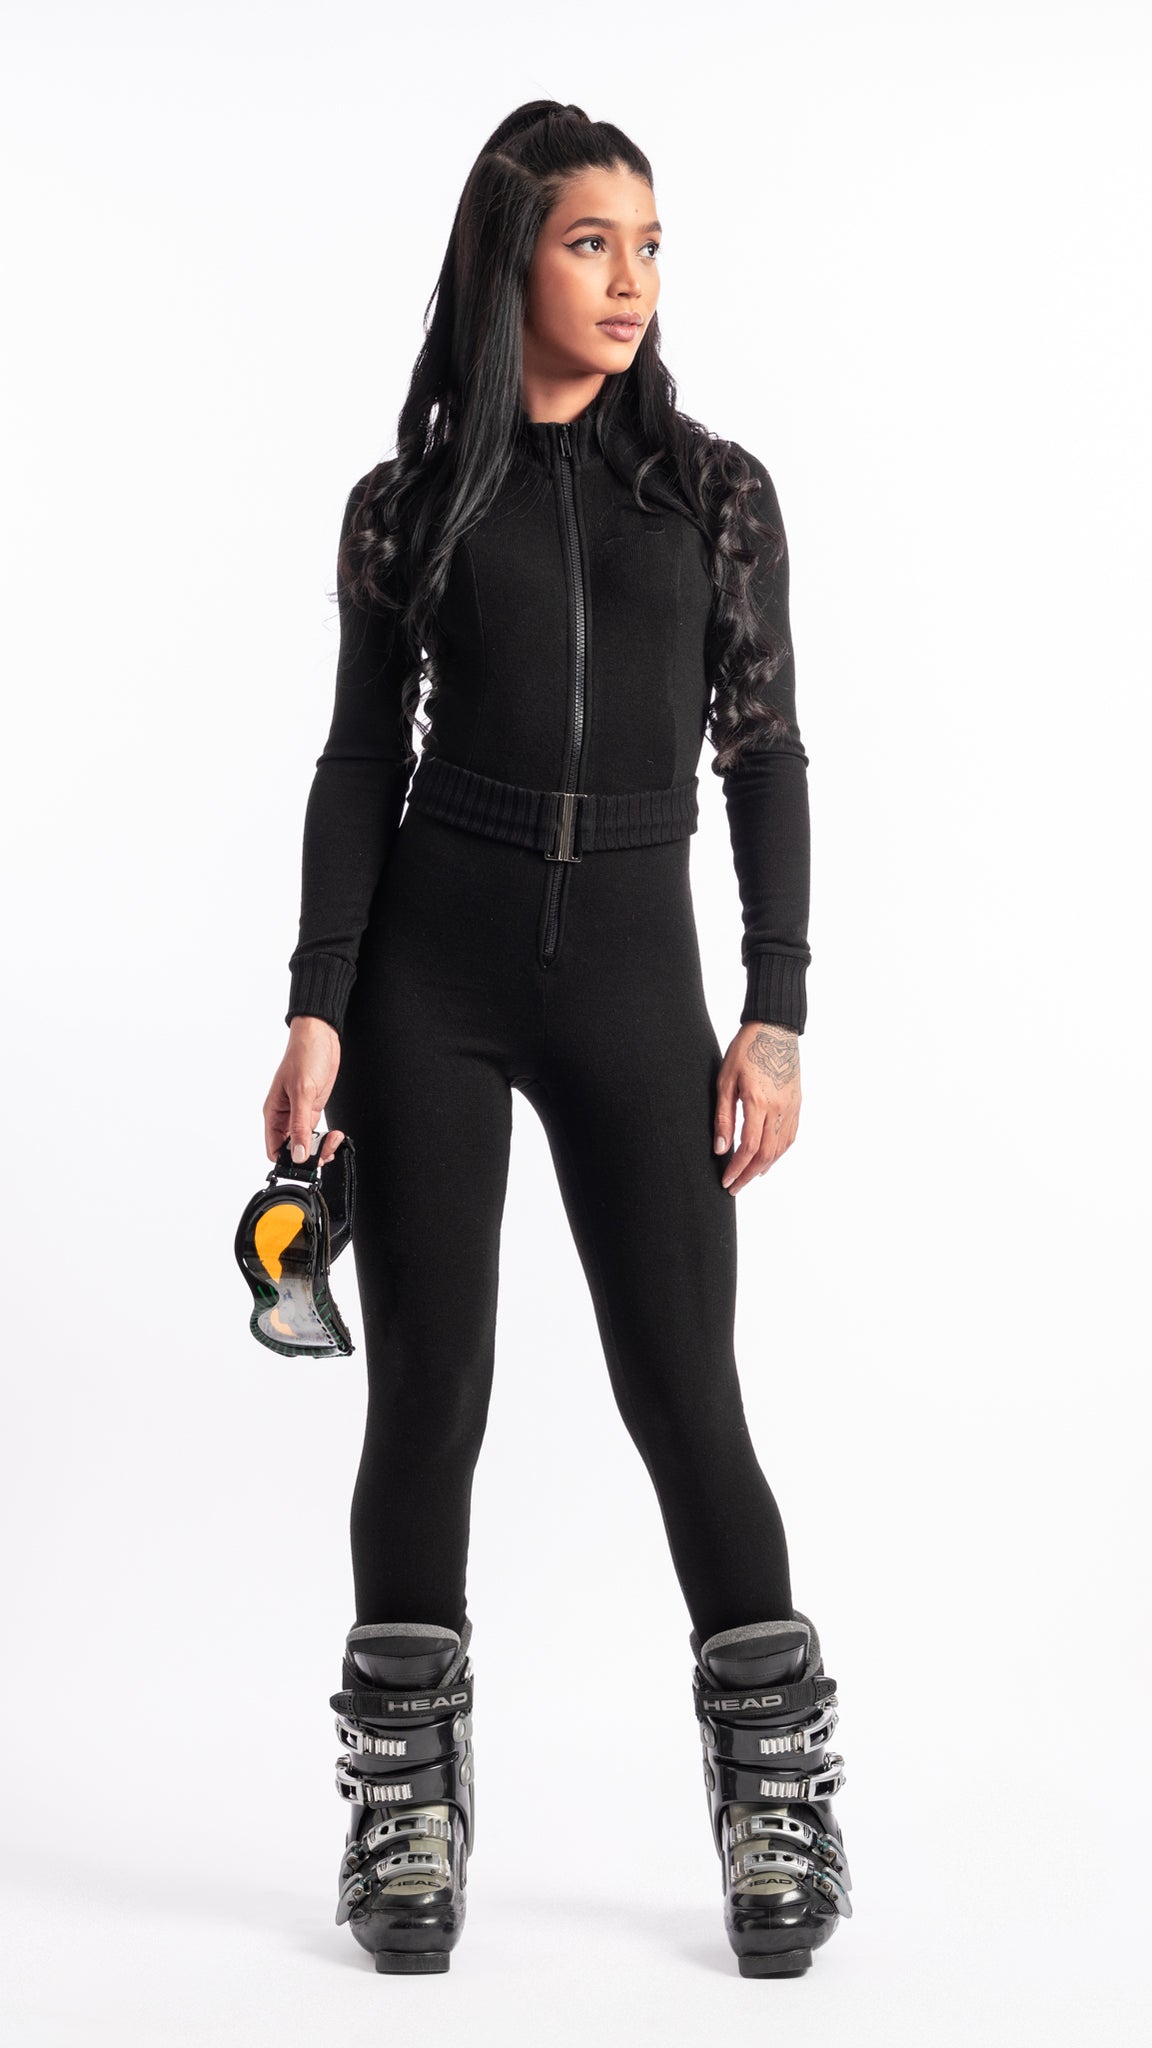 Combinaison noire en maille pour ski avec zip et ceinture Unik Paris